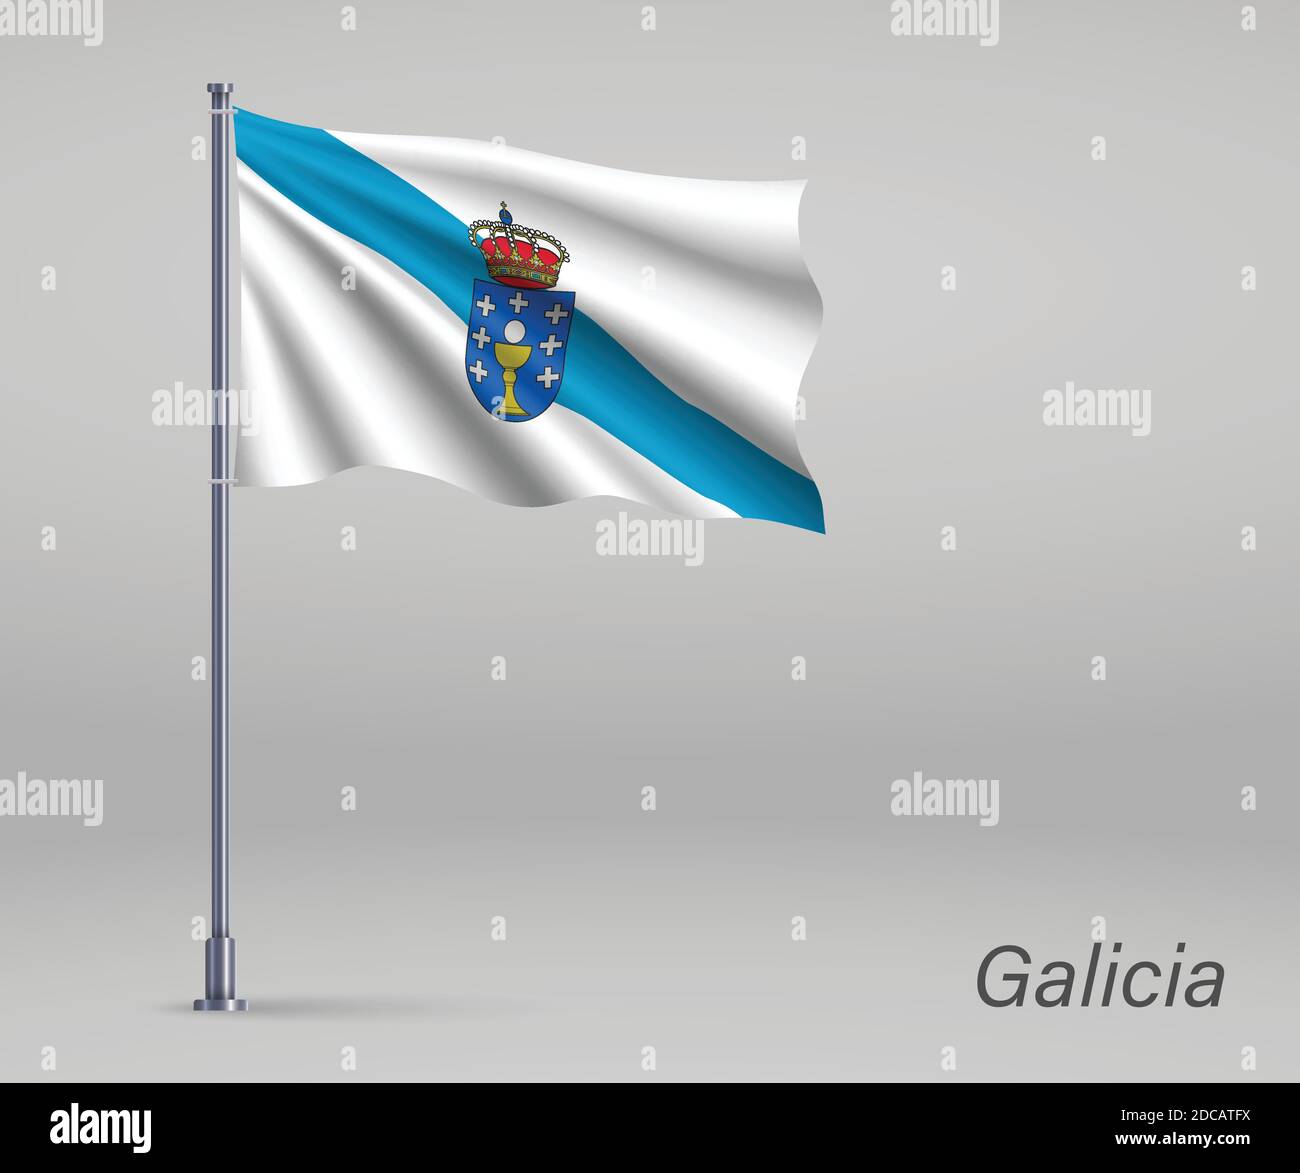 Icono De La Bandera De Galicia Stock de ilustración - Ilustración de  aislado, naturalizado: 133582803